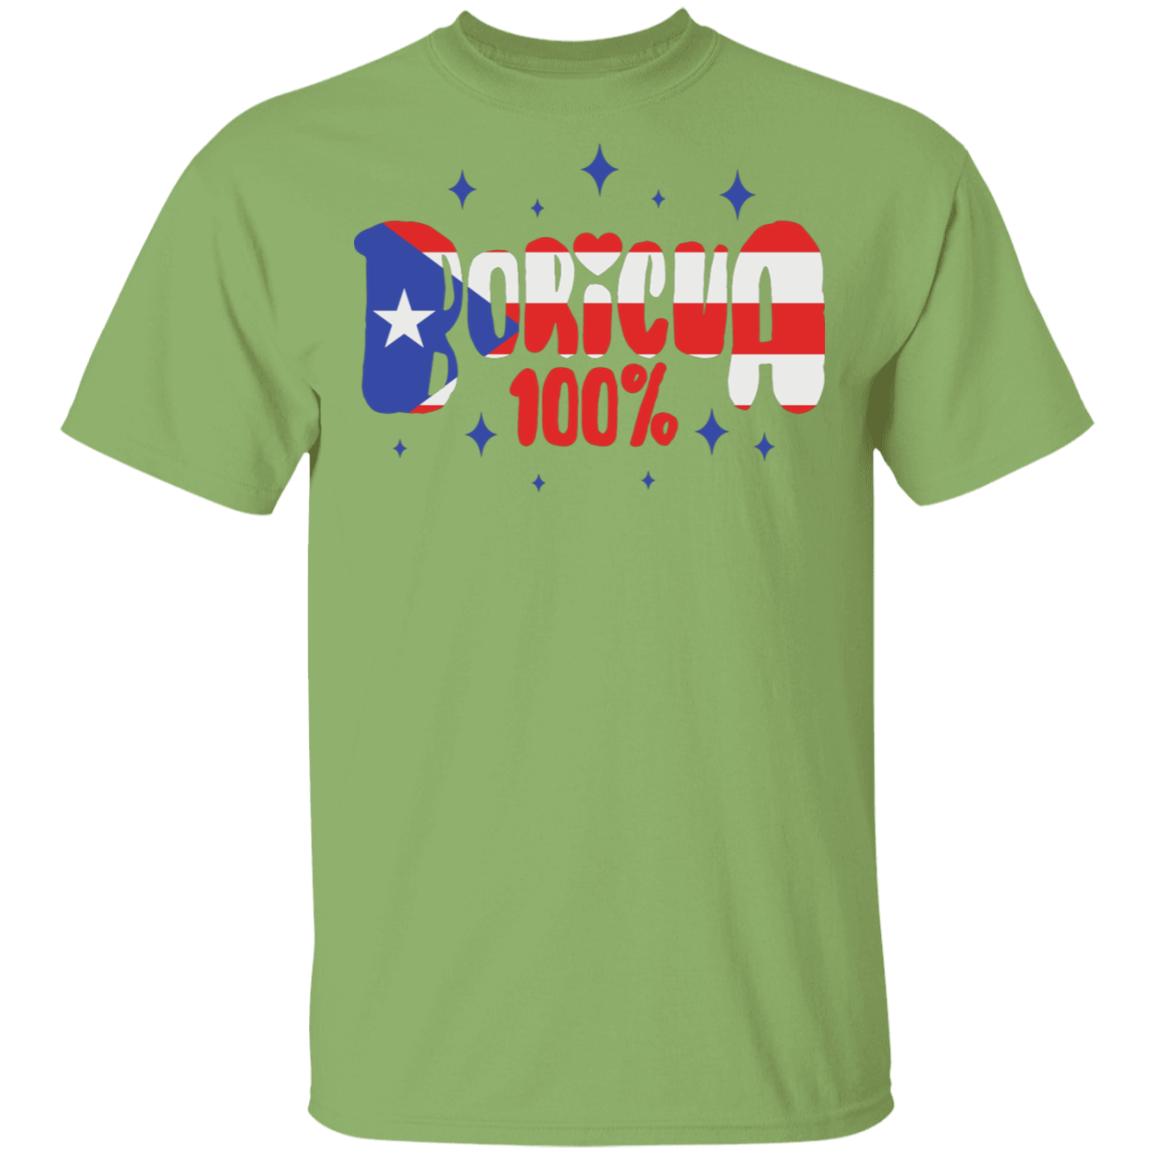 100% Boricua T-Short - Puerto Rican Pride